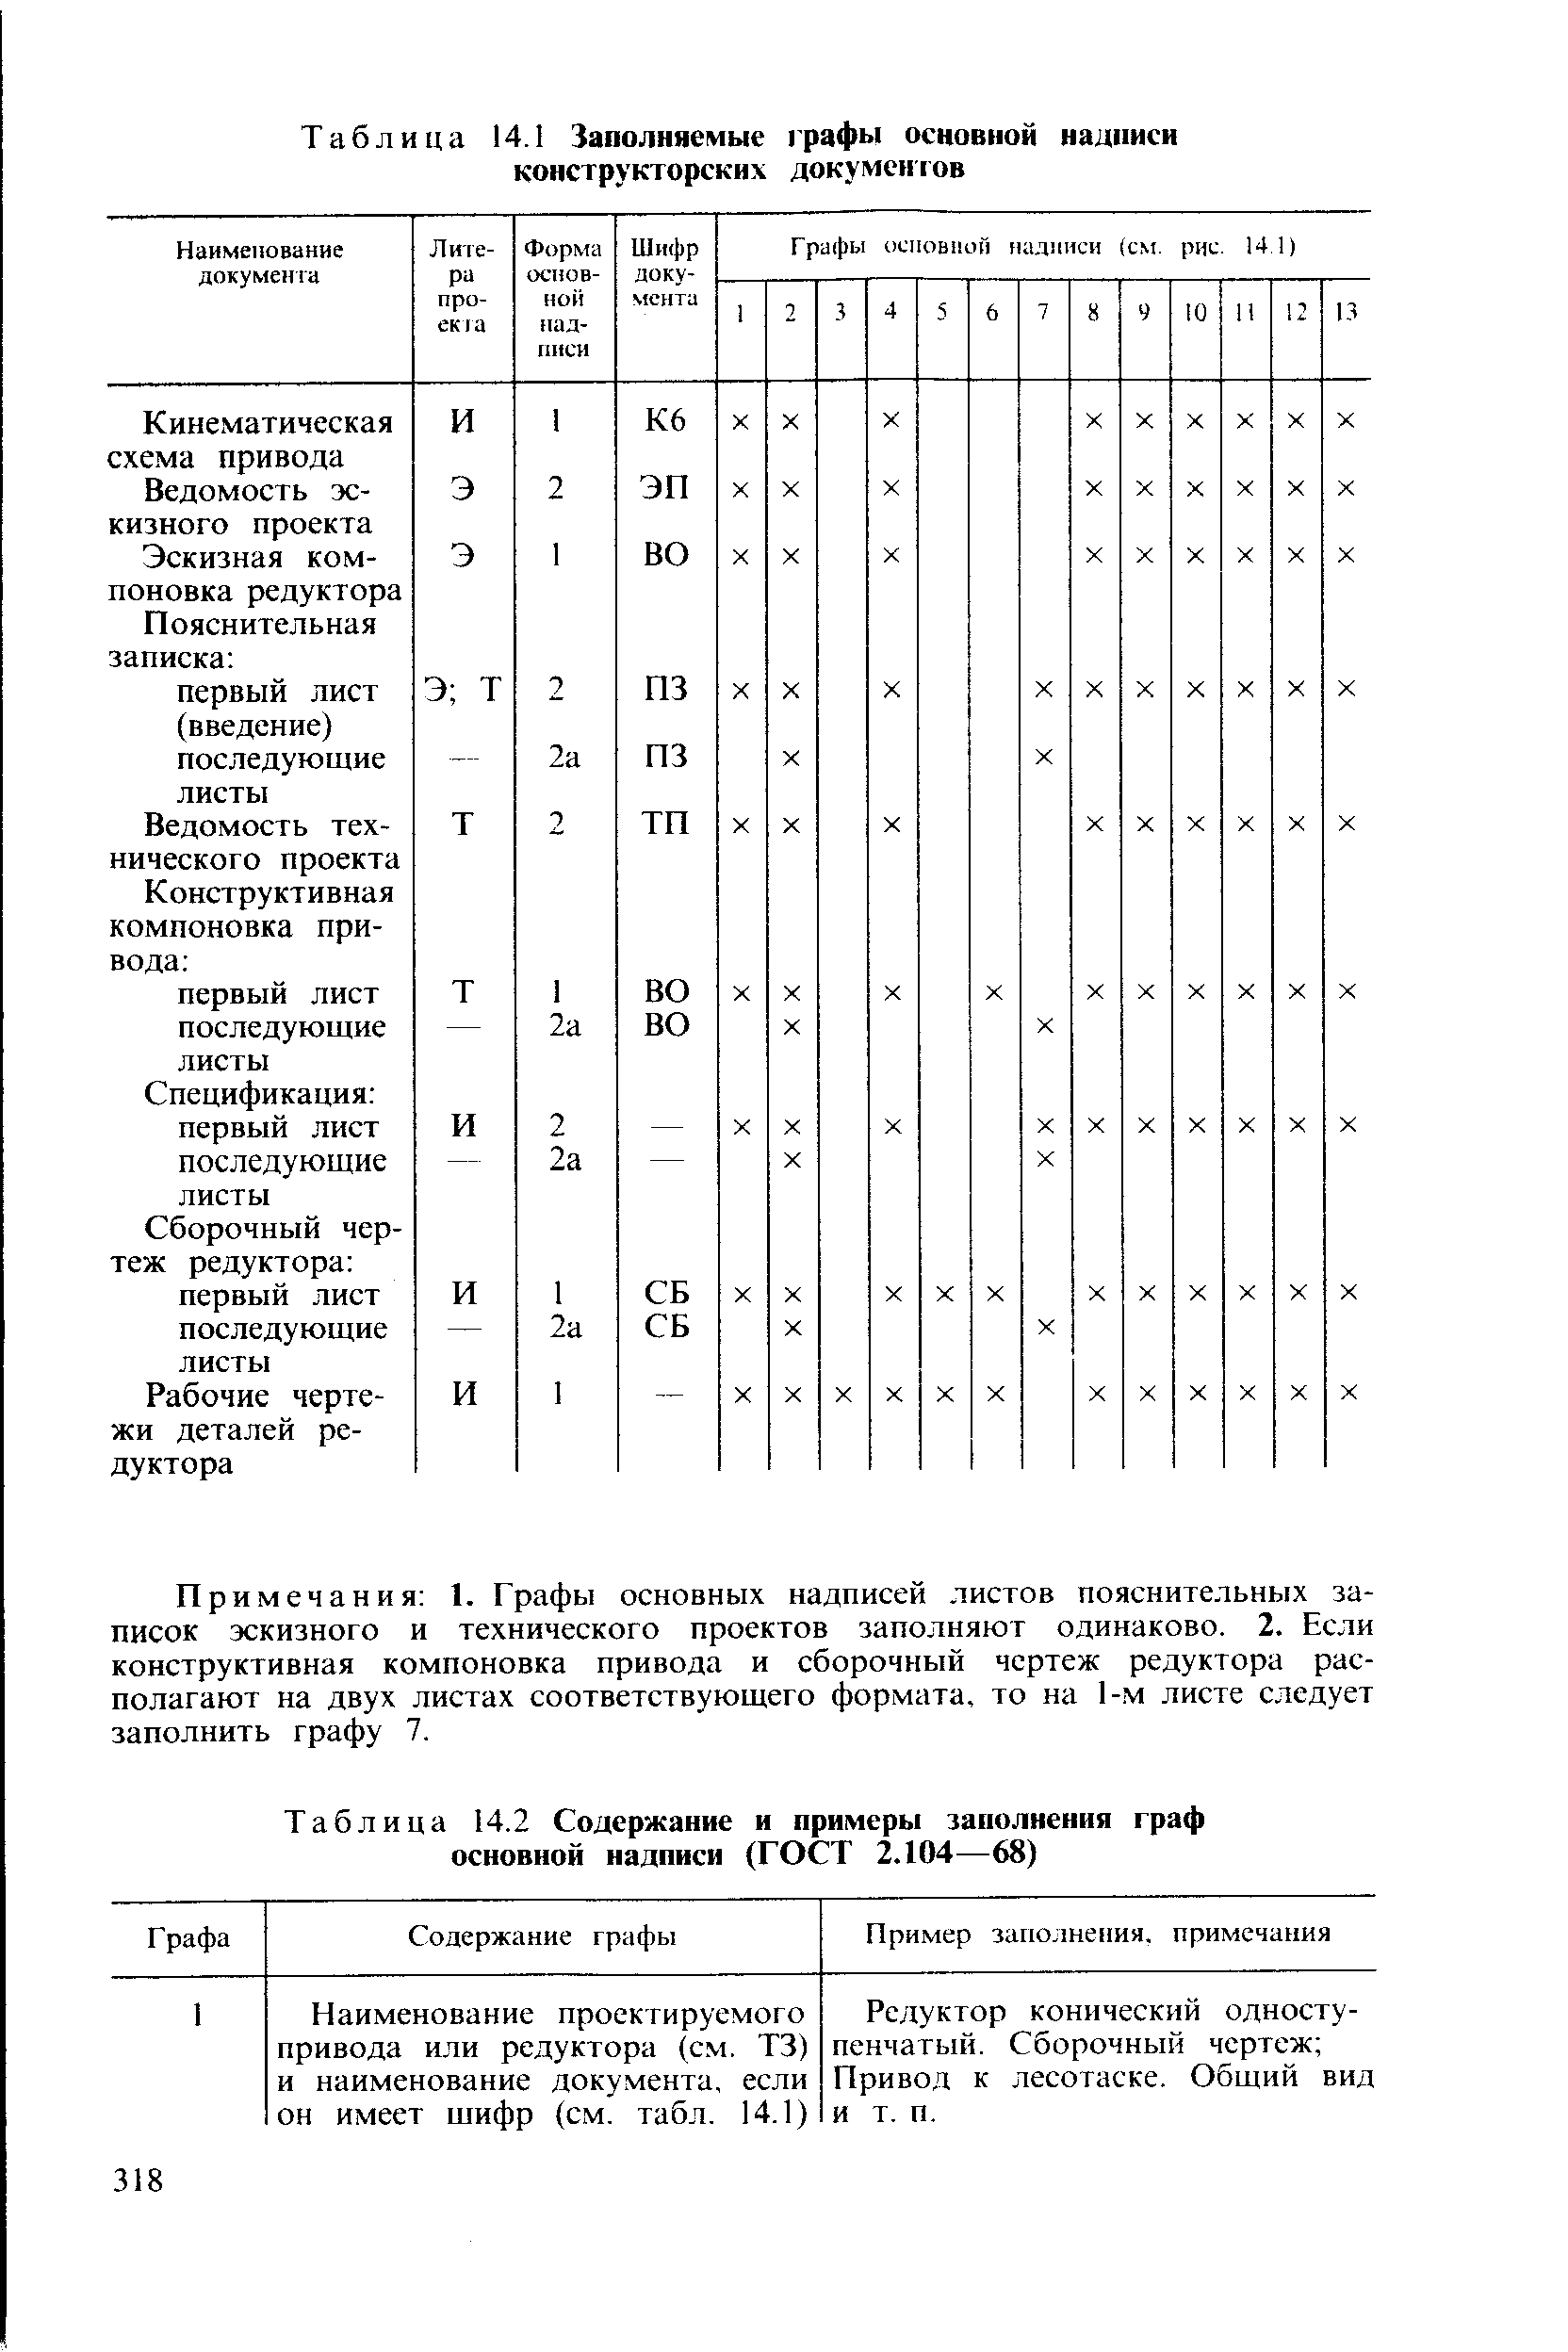 Таблица 14.2 Содержание и примеры заполнения граф основной надписи (ГОСТ 2.104—68)
